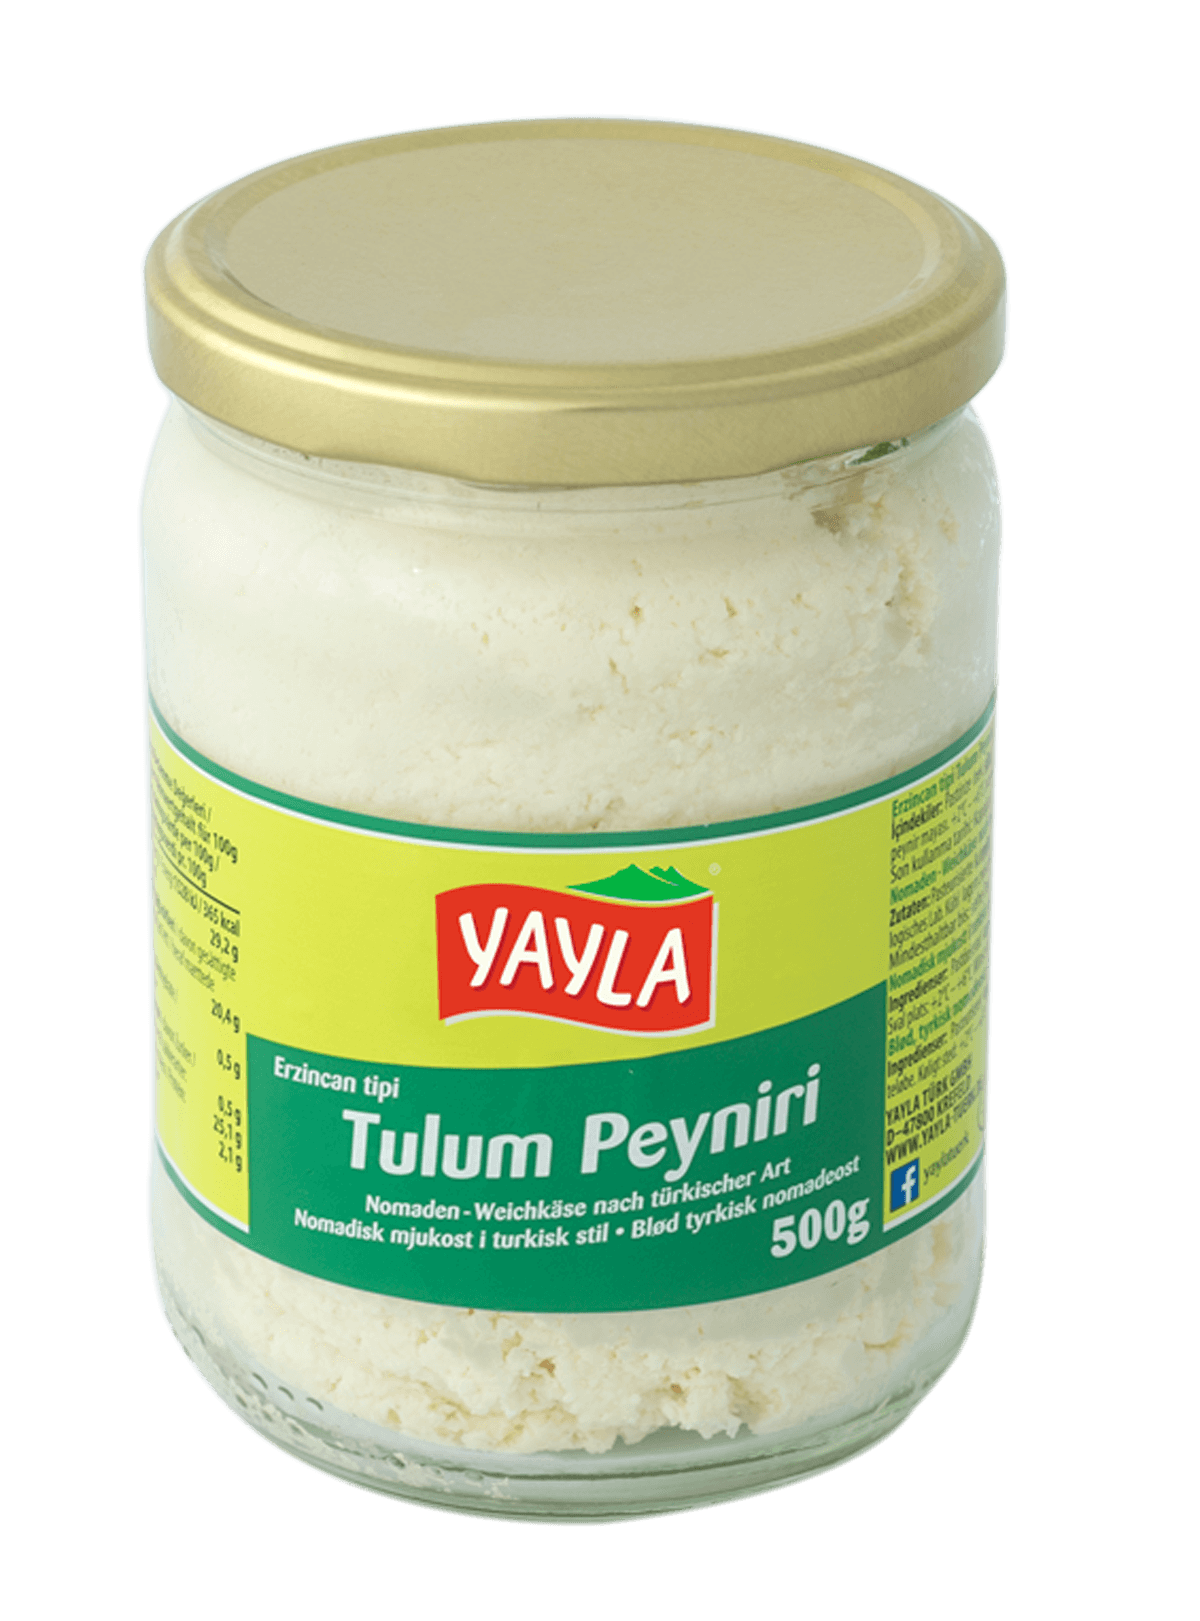 Yayla Erzincan Tulum Peyniri / Weichkäse nach türkischer Art 500g